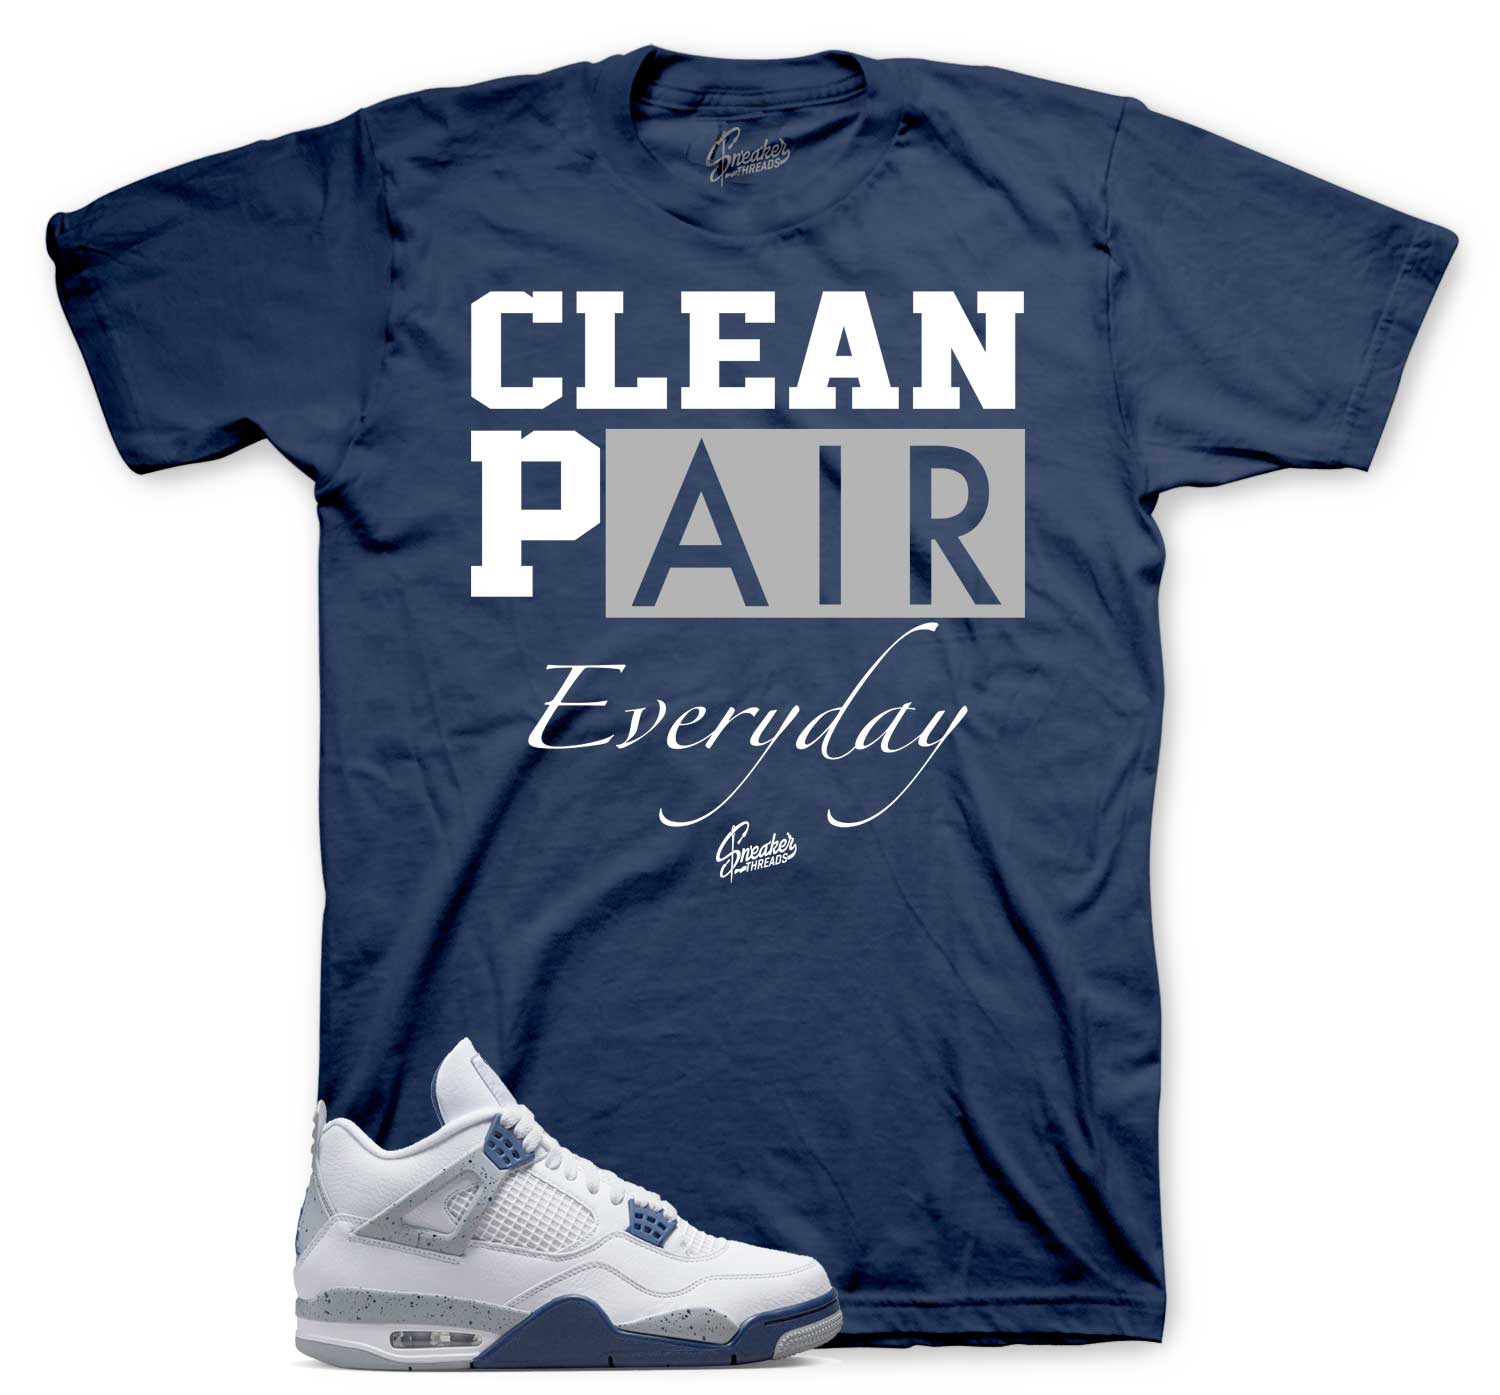 Retro 4 Midngiht Navy Shirt - Clean Pair - Navy